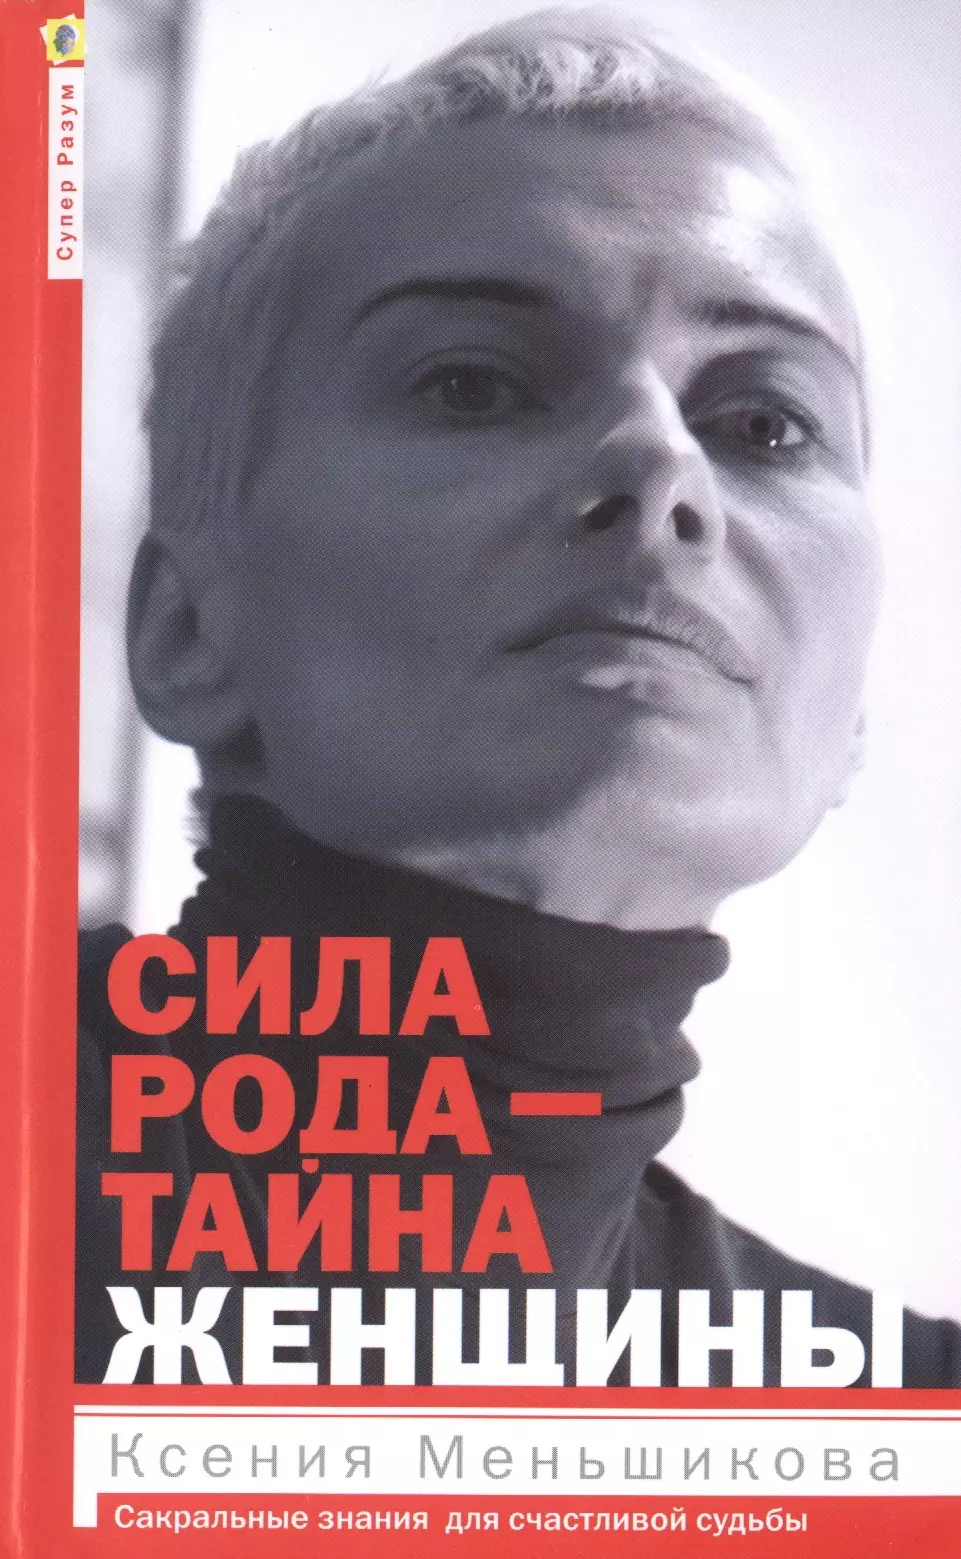 Меньшикова Ксения Евгеньевна - Сила рода - тайна женщины. Сакральные знания для счастливой судьбы